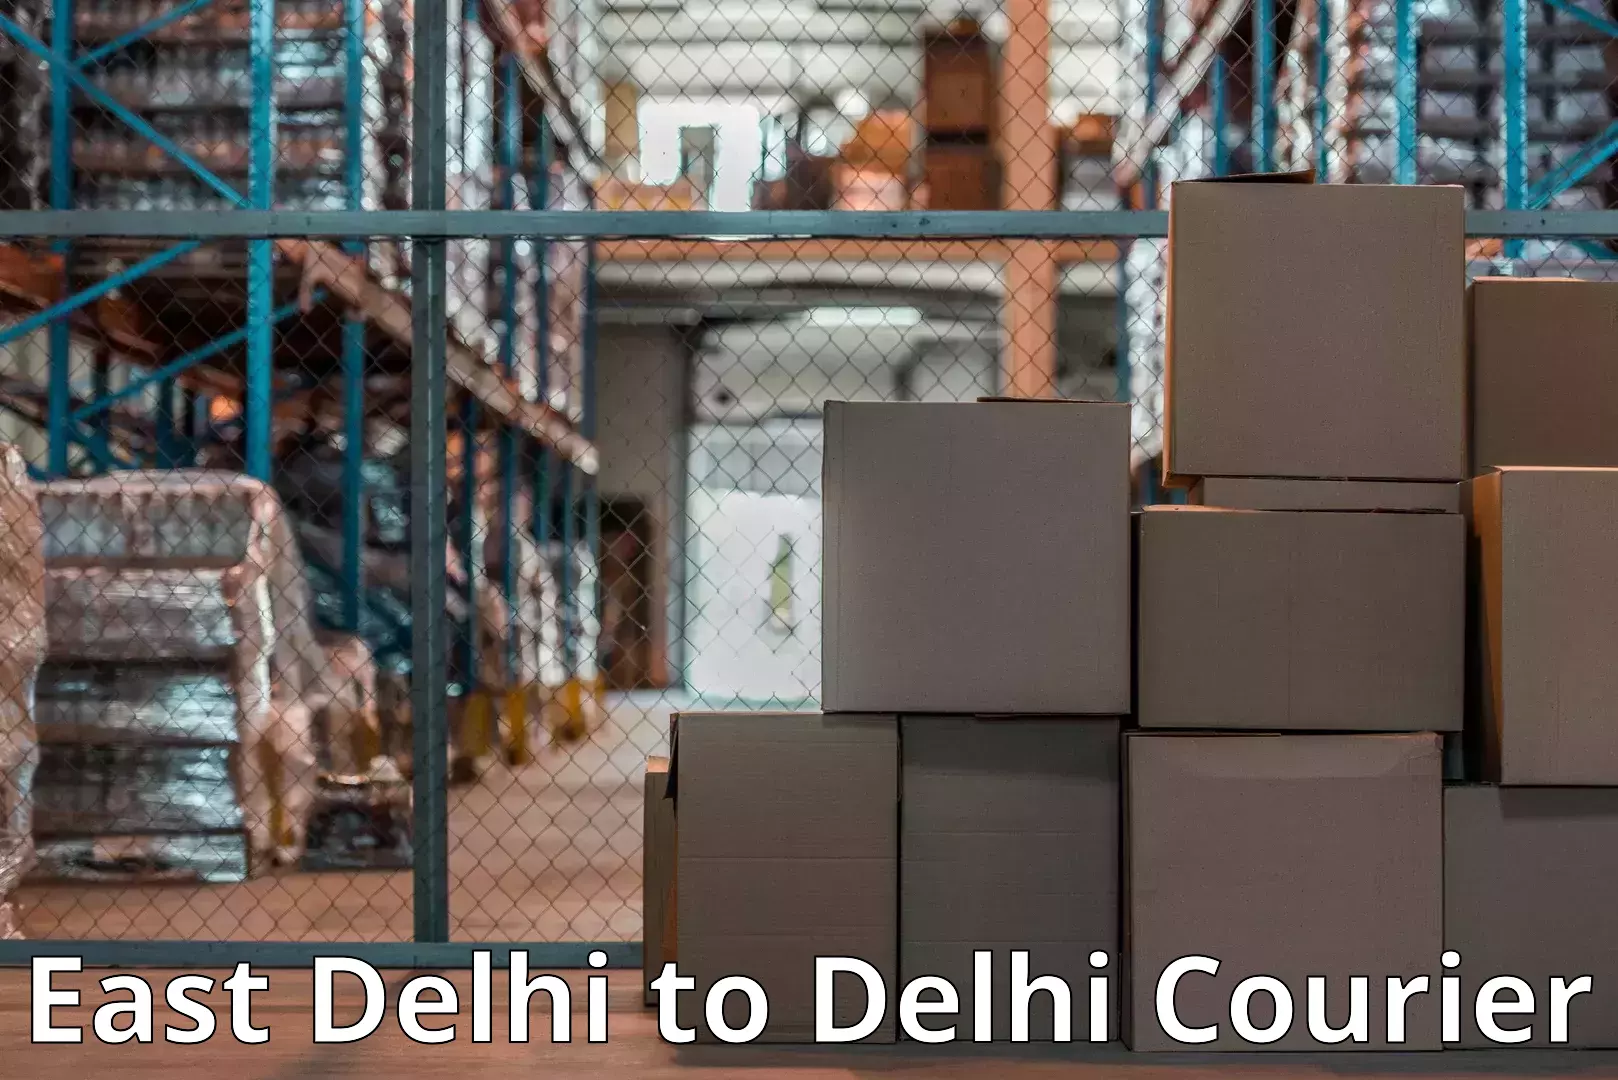 Furniture moving experts East Delhi to Delhi